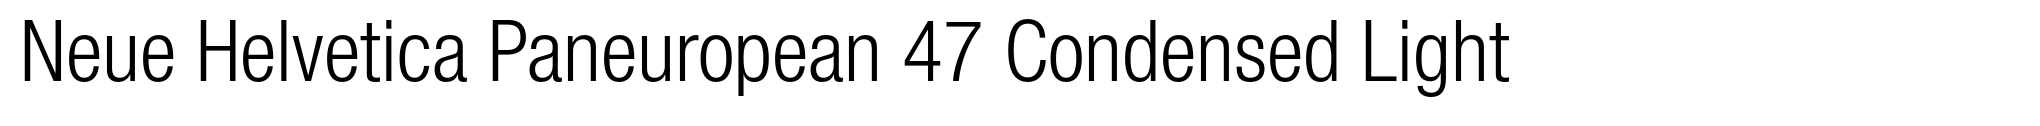 Neue Helvetica Paneuropean 47 Condensed Light image